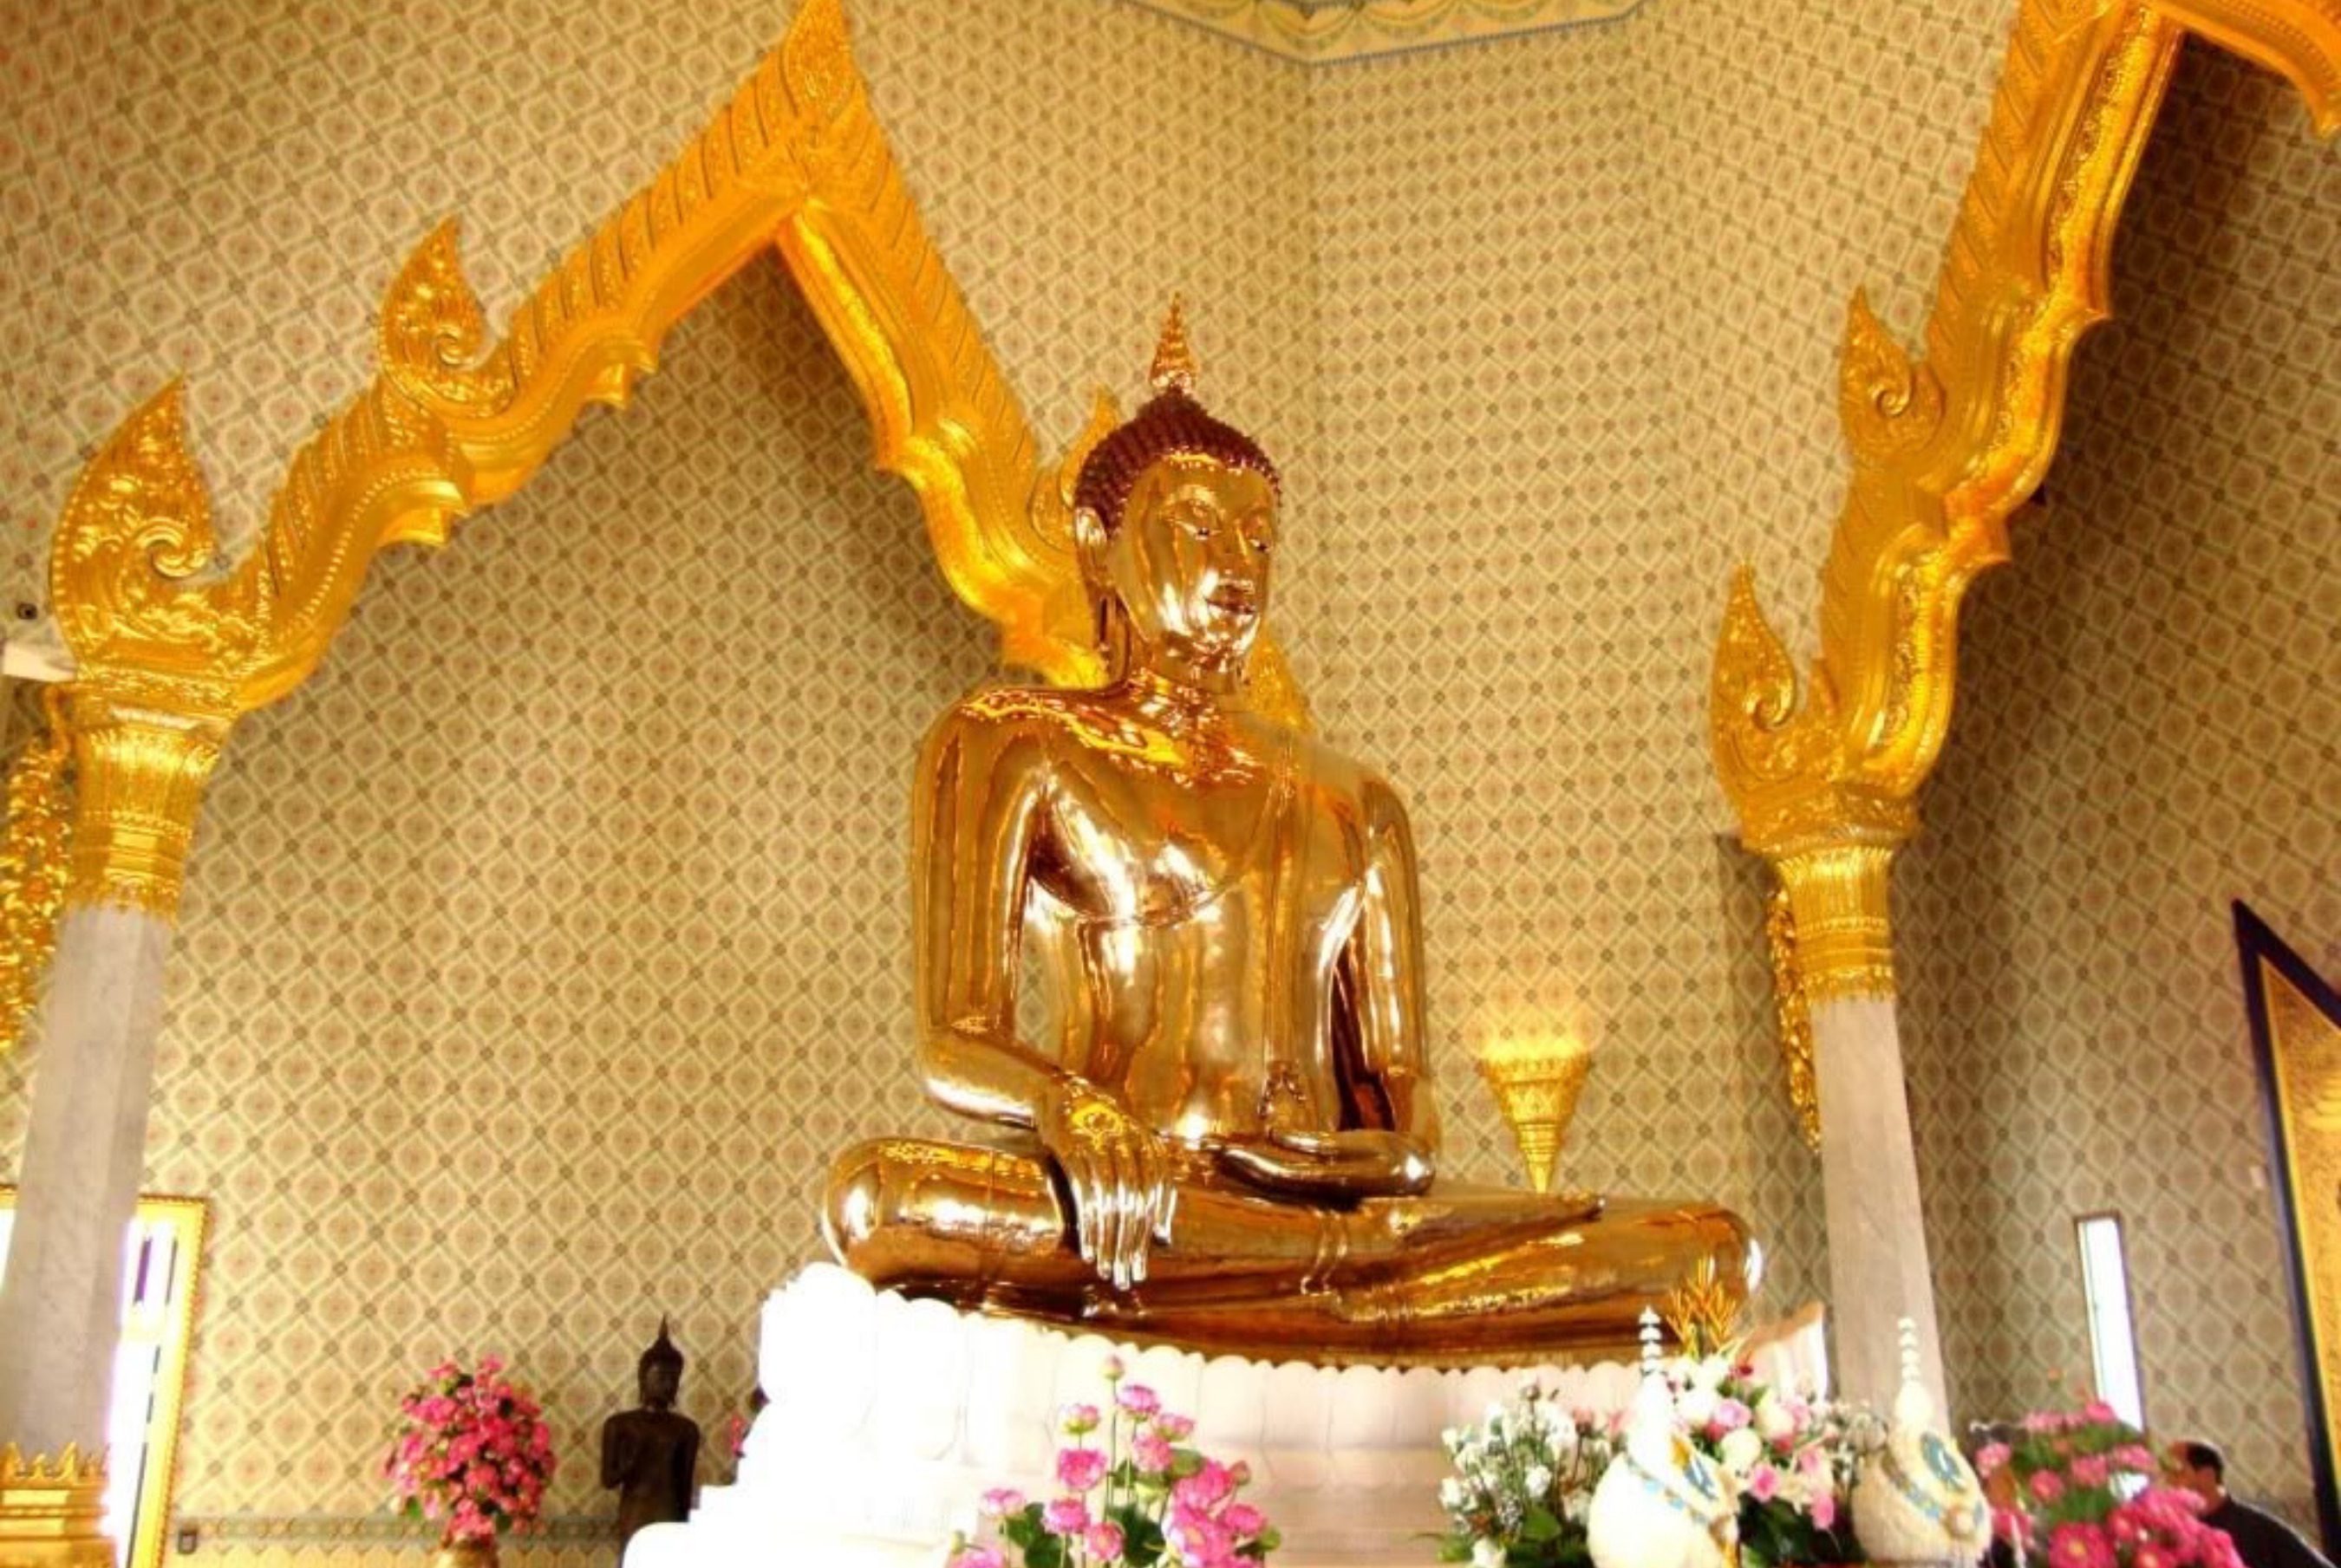 Viếng thăm chùa Phật Vàng vô cùng linh thiên ở Thái Lan